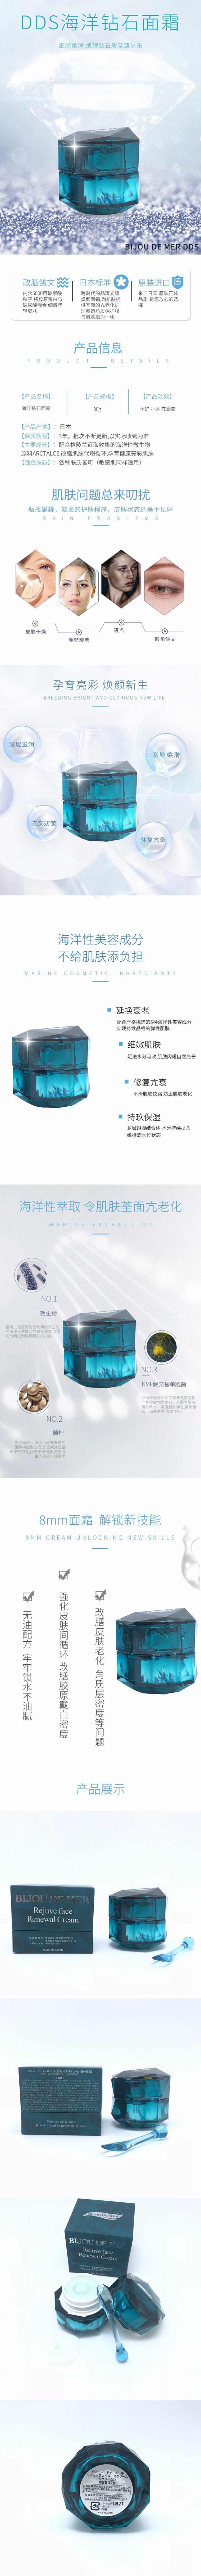 【日本直邮】日本Recore Serum冻干絮DDS海洋钻石面霜 滋润锁水细腻柔滑30g